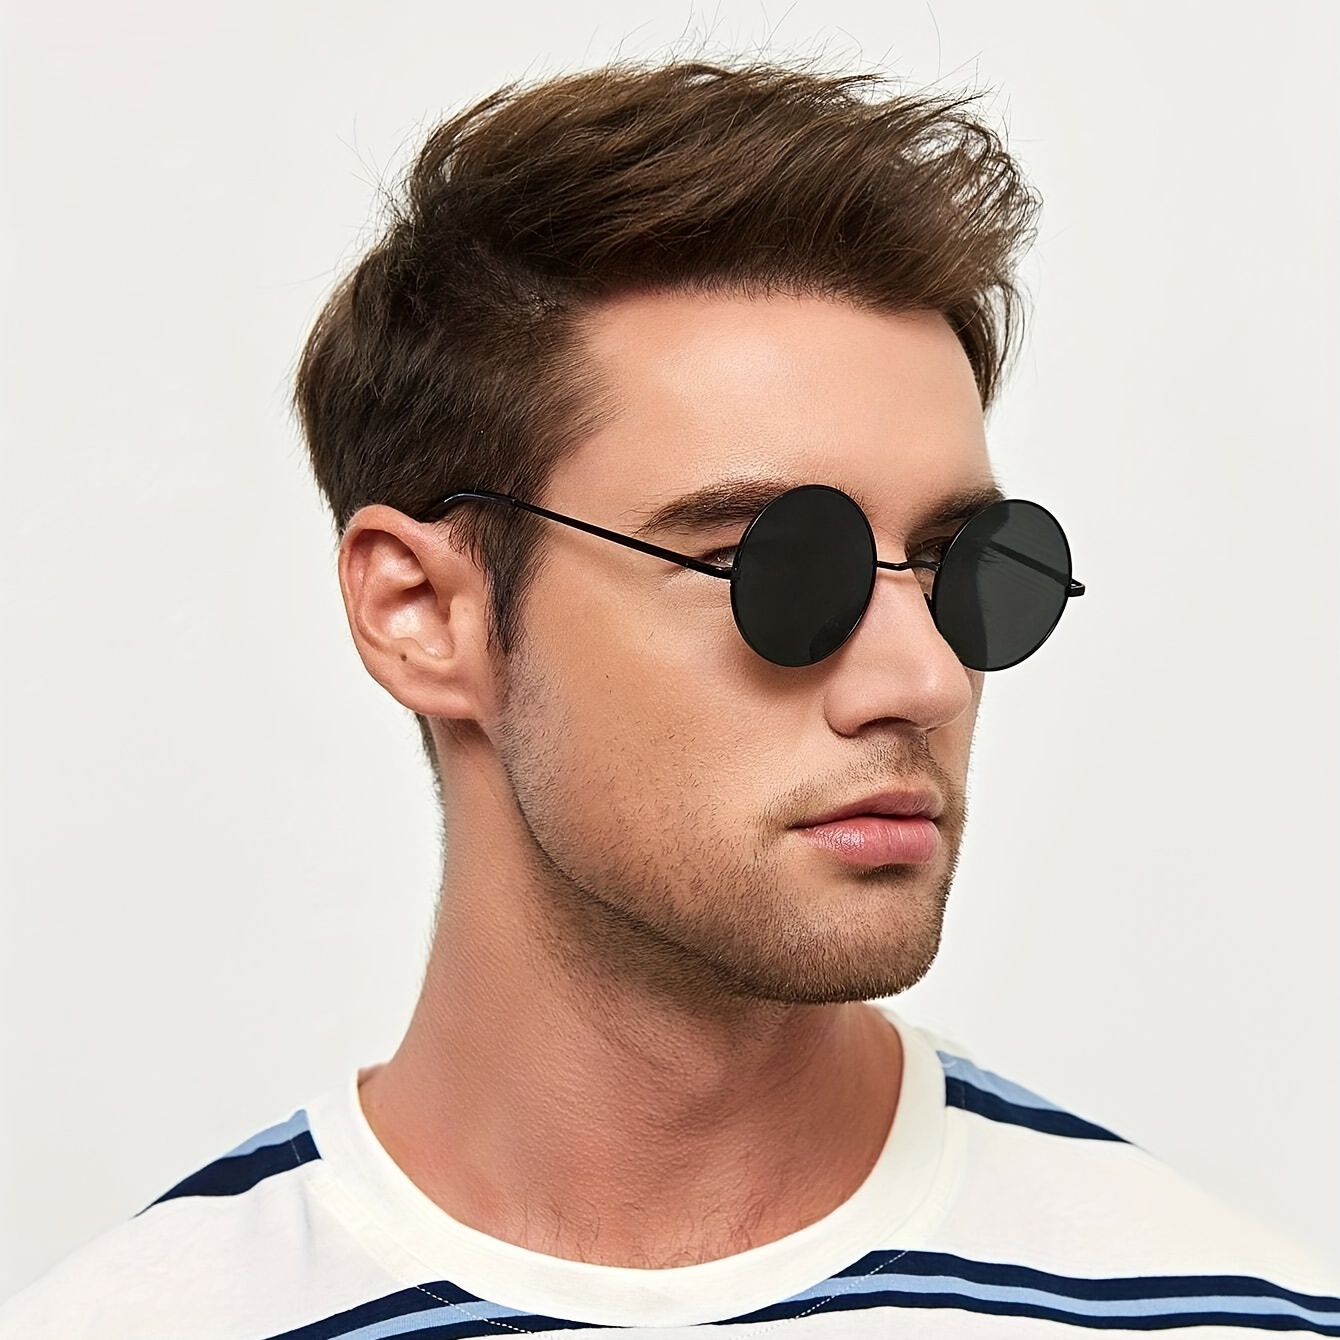 Simple Retro Round Frame Sunglasses Men Women Versatile Driving